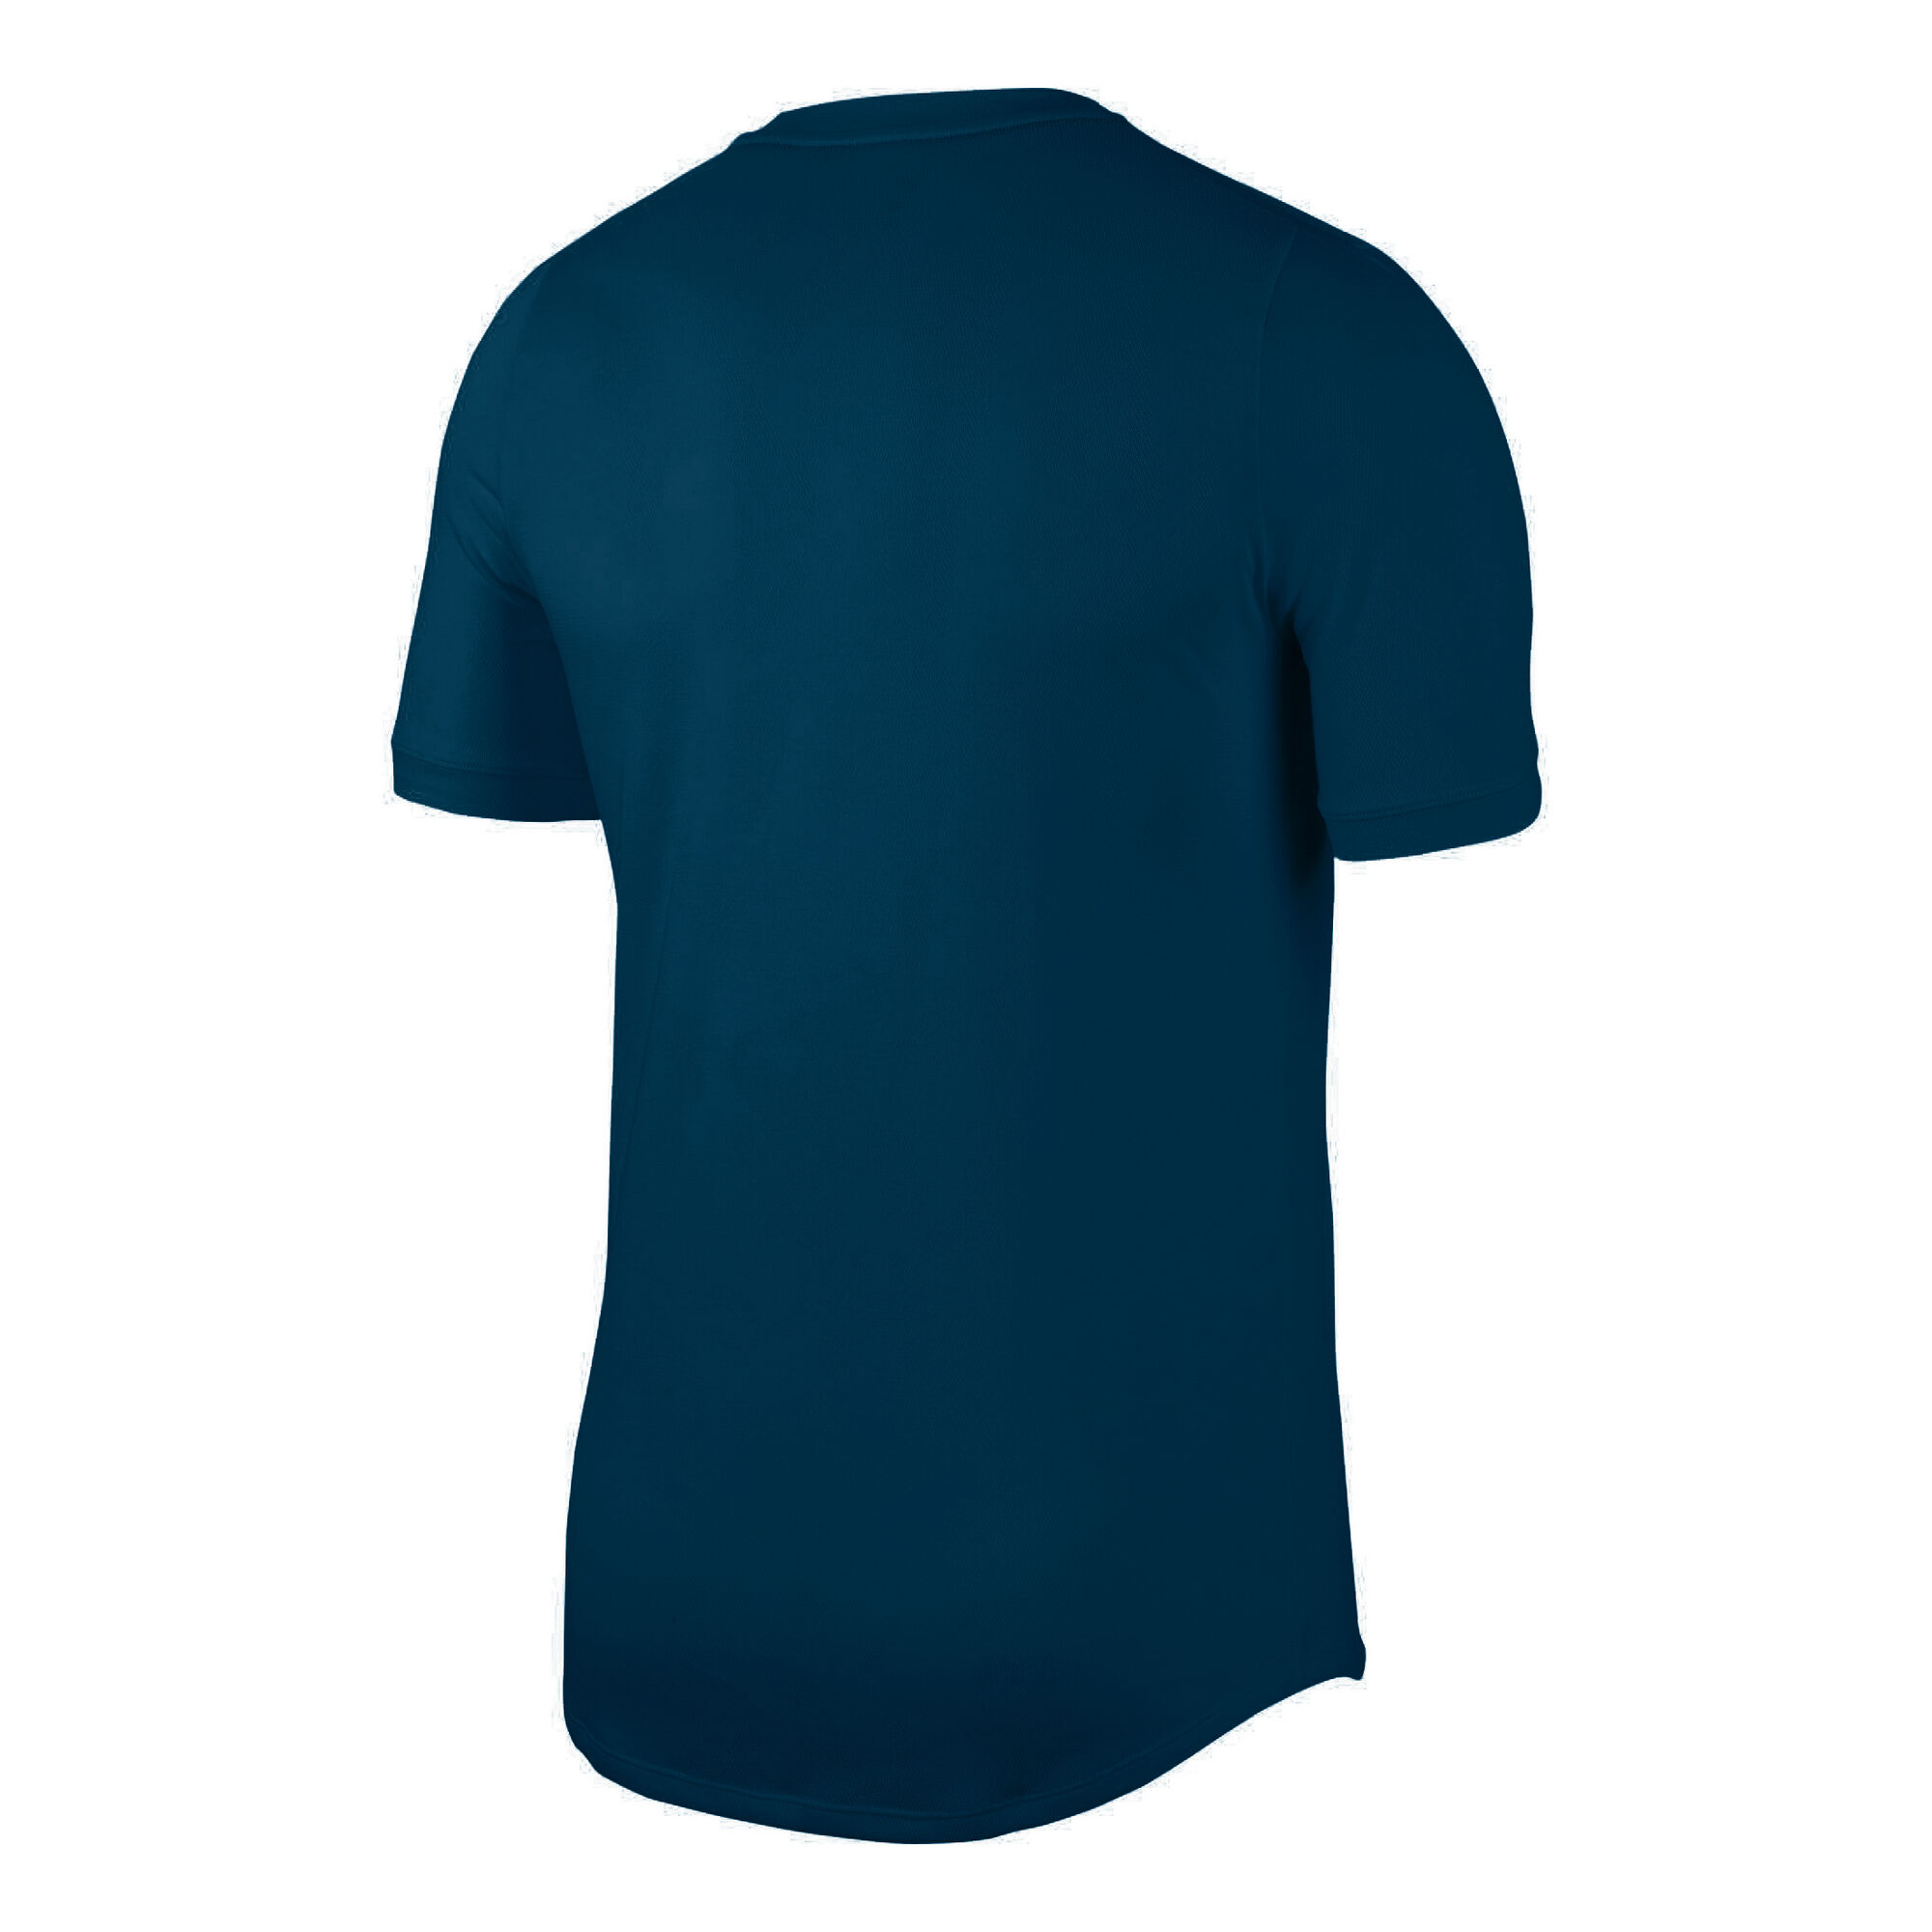 buy Nike Court Dry Challenger T-Shirt Men - Petrol, White online ...